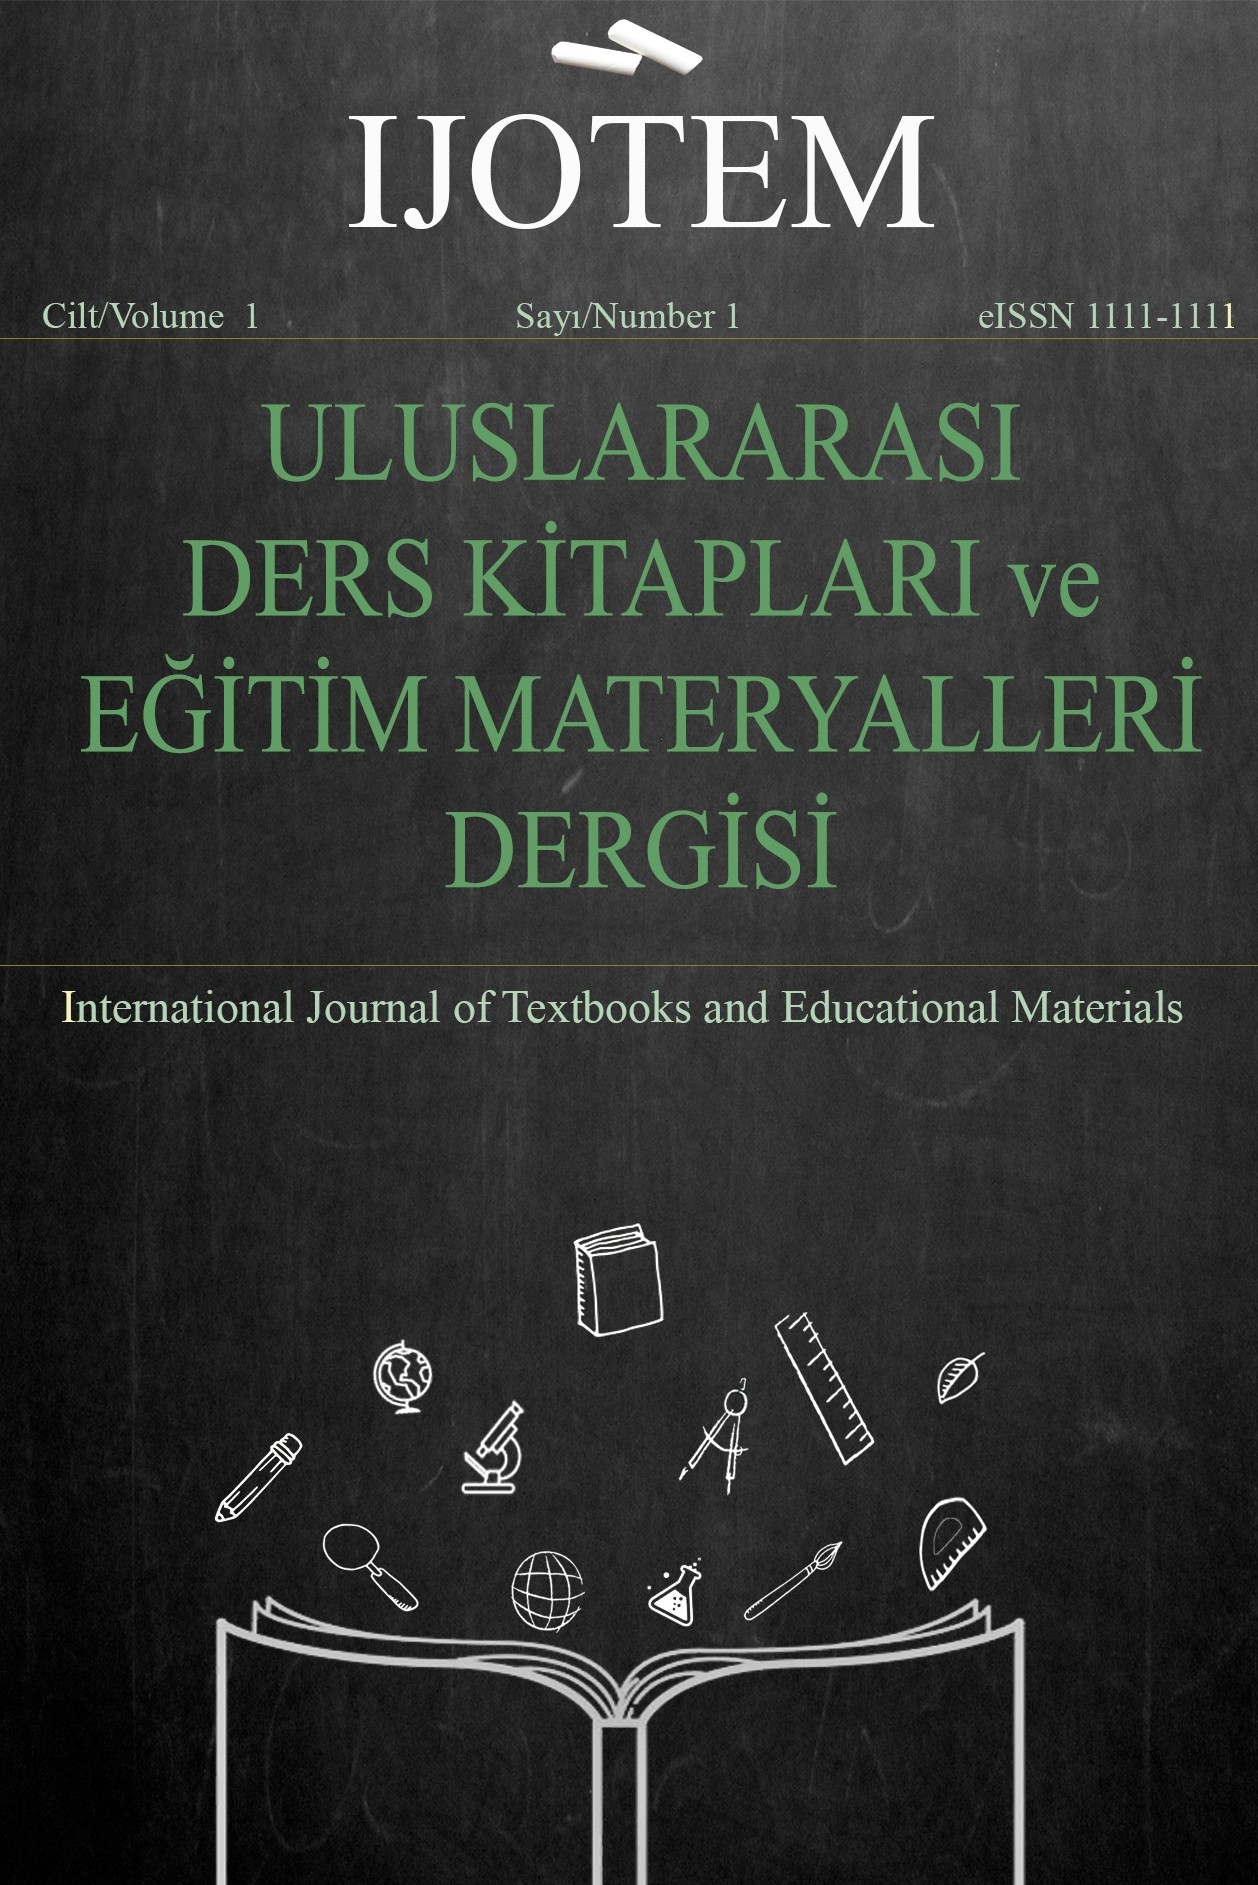 Uluslararası Ders Kitapları ve Eğitim Materyalleri Dergisi